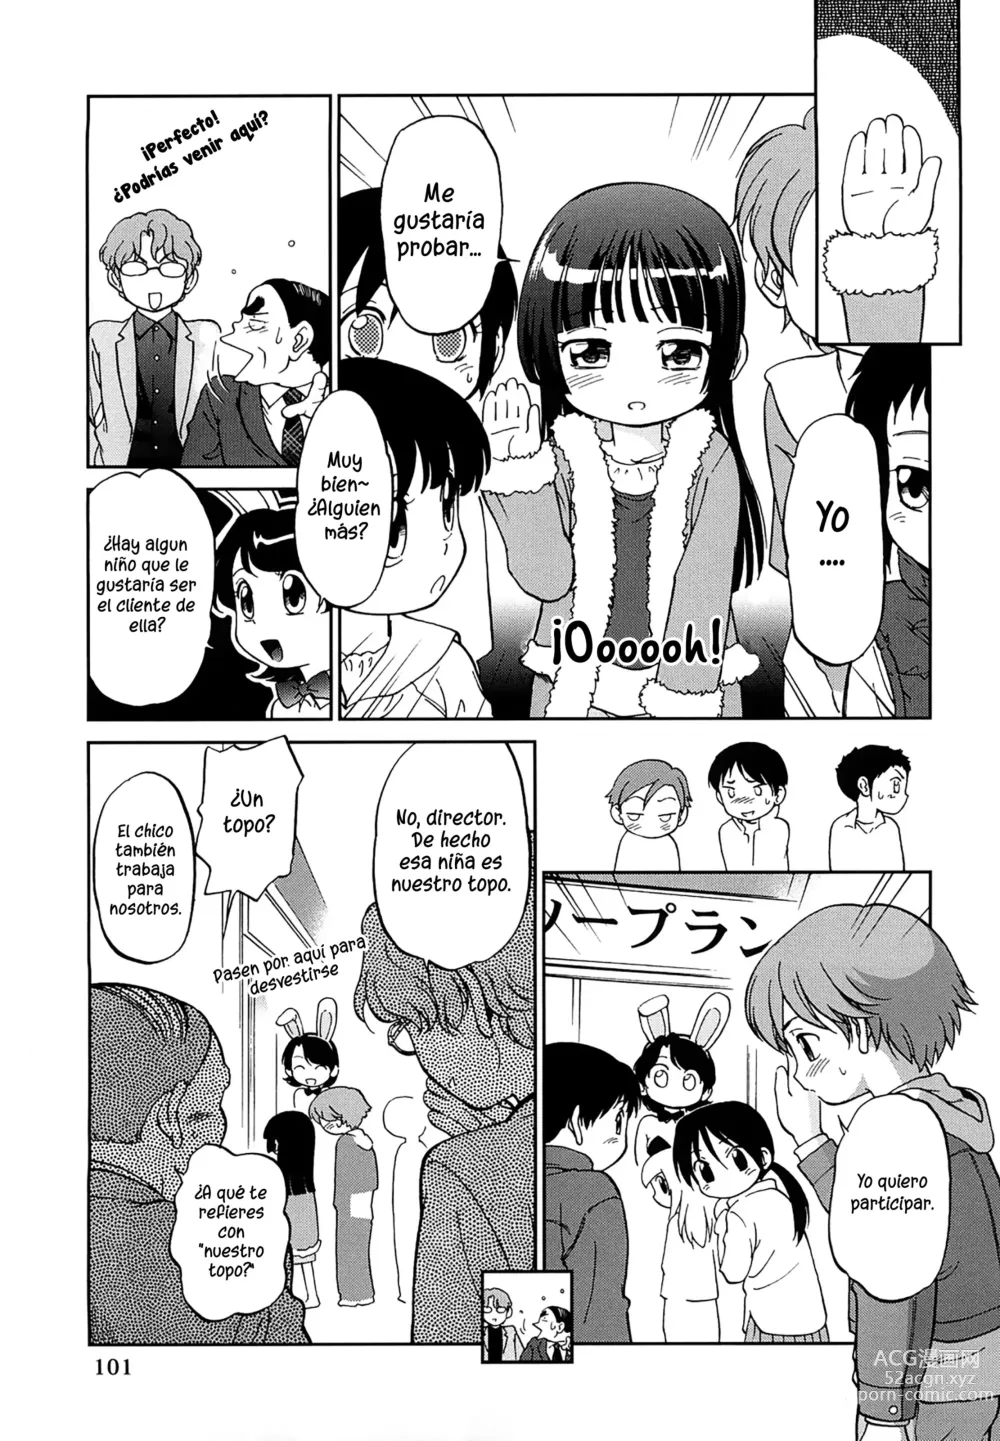 Page 5 of manga Niños trabajando